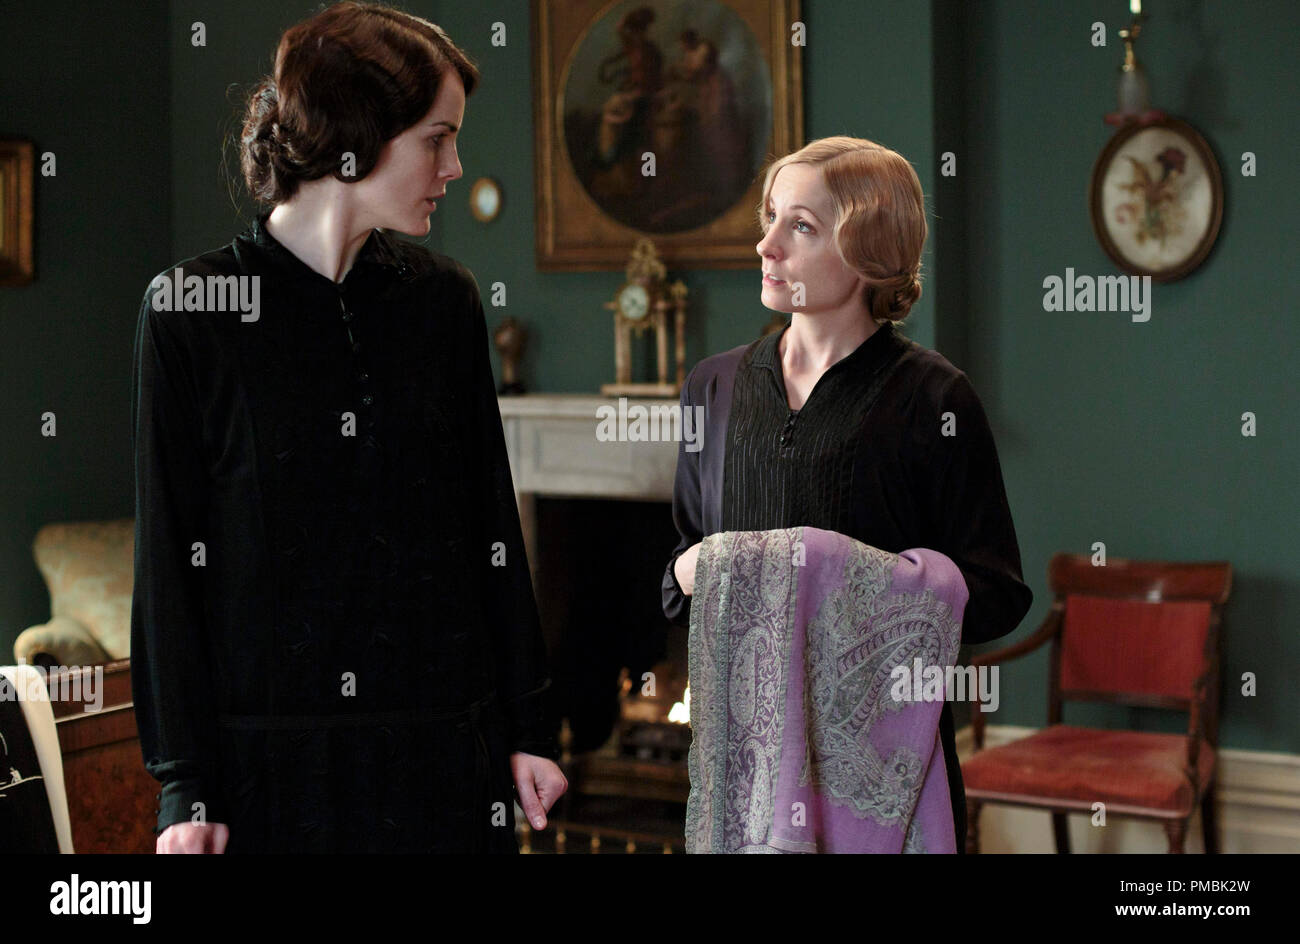 Cavendish Abbey, stagione 4 mostrato da sinistra a destra: Michelle Dockery come Lady Maria e Joanne Froggatt come Anna Bates Foto Stock